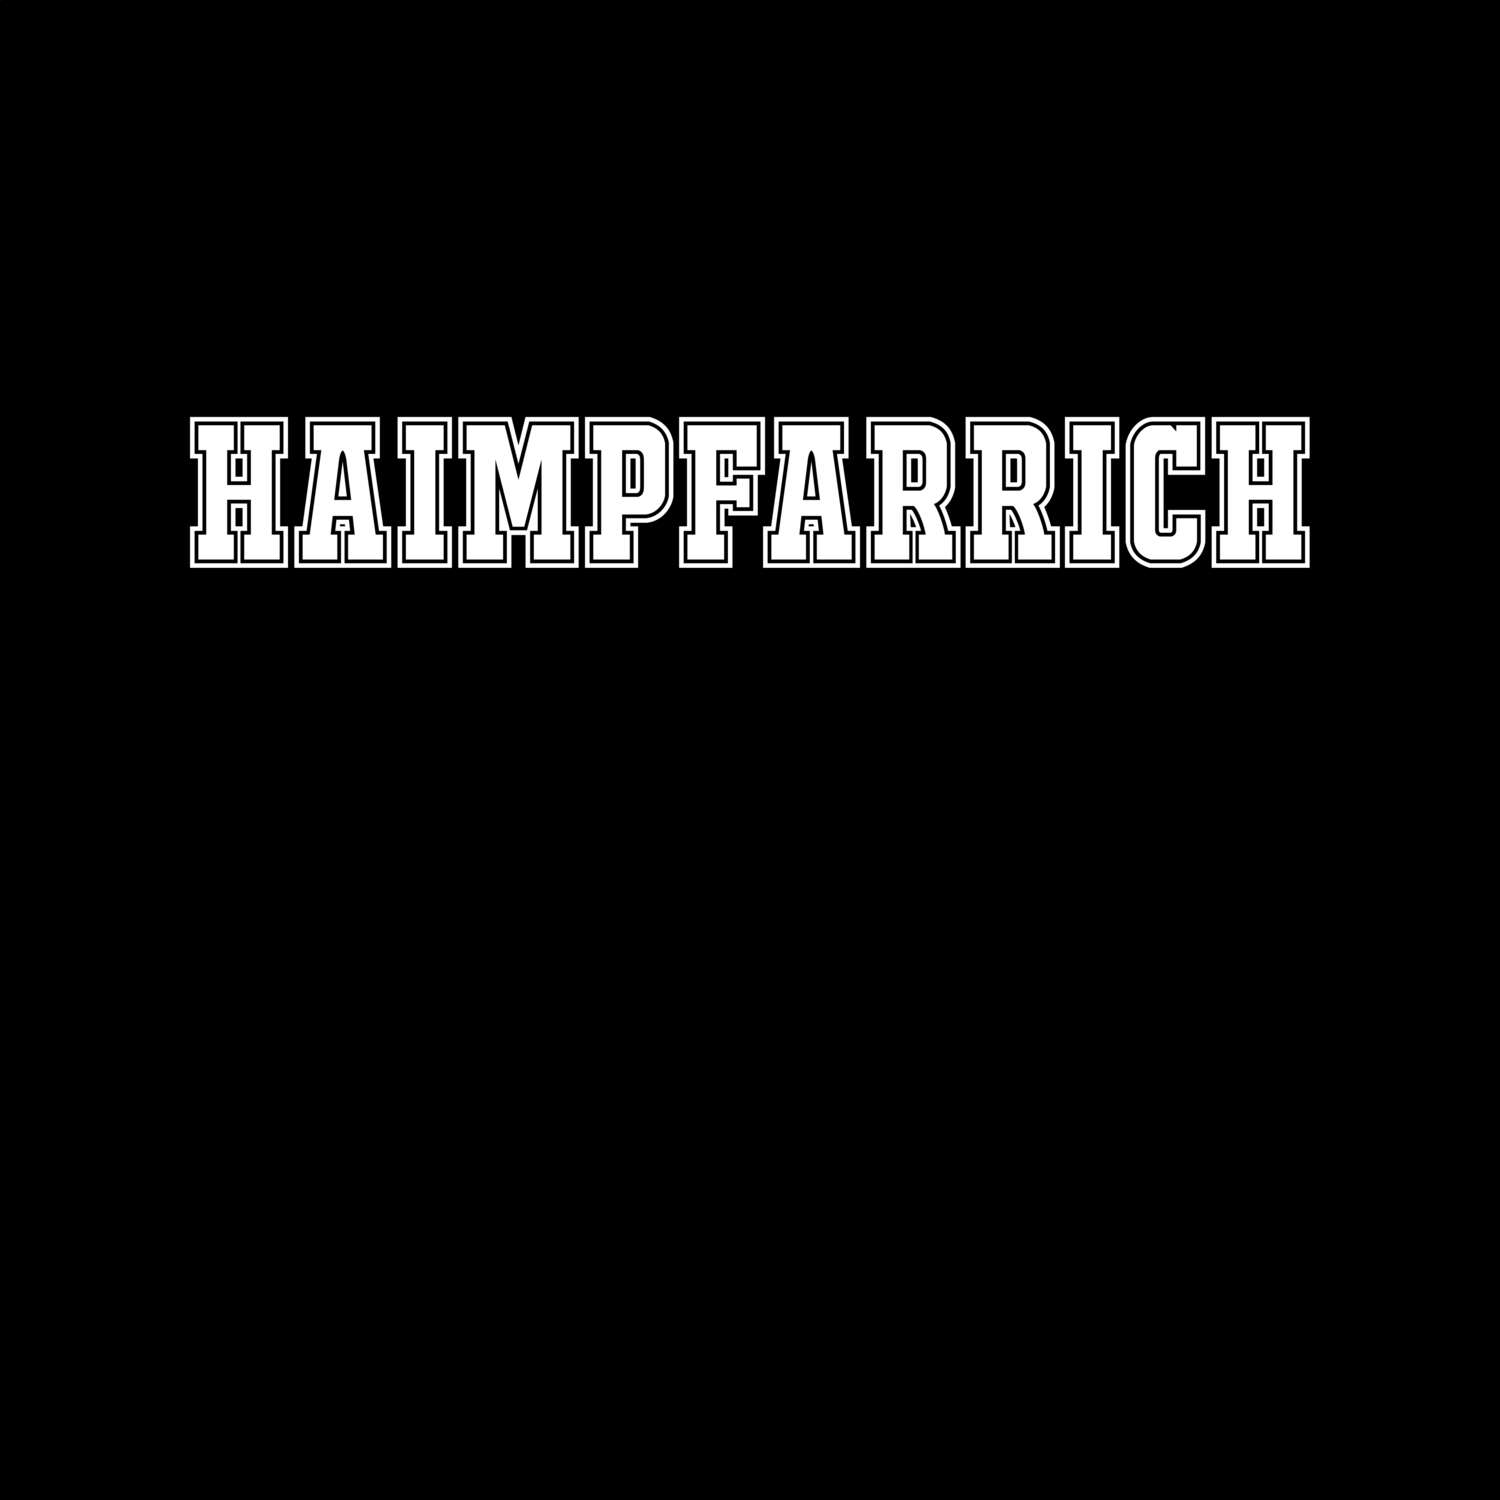 Haimpfarrich T-Shirt »Classic«